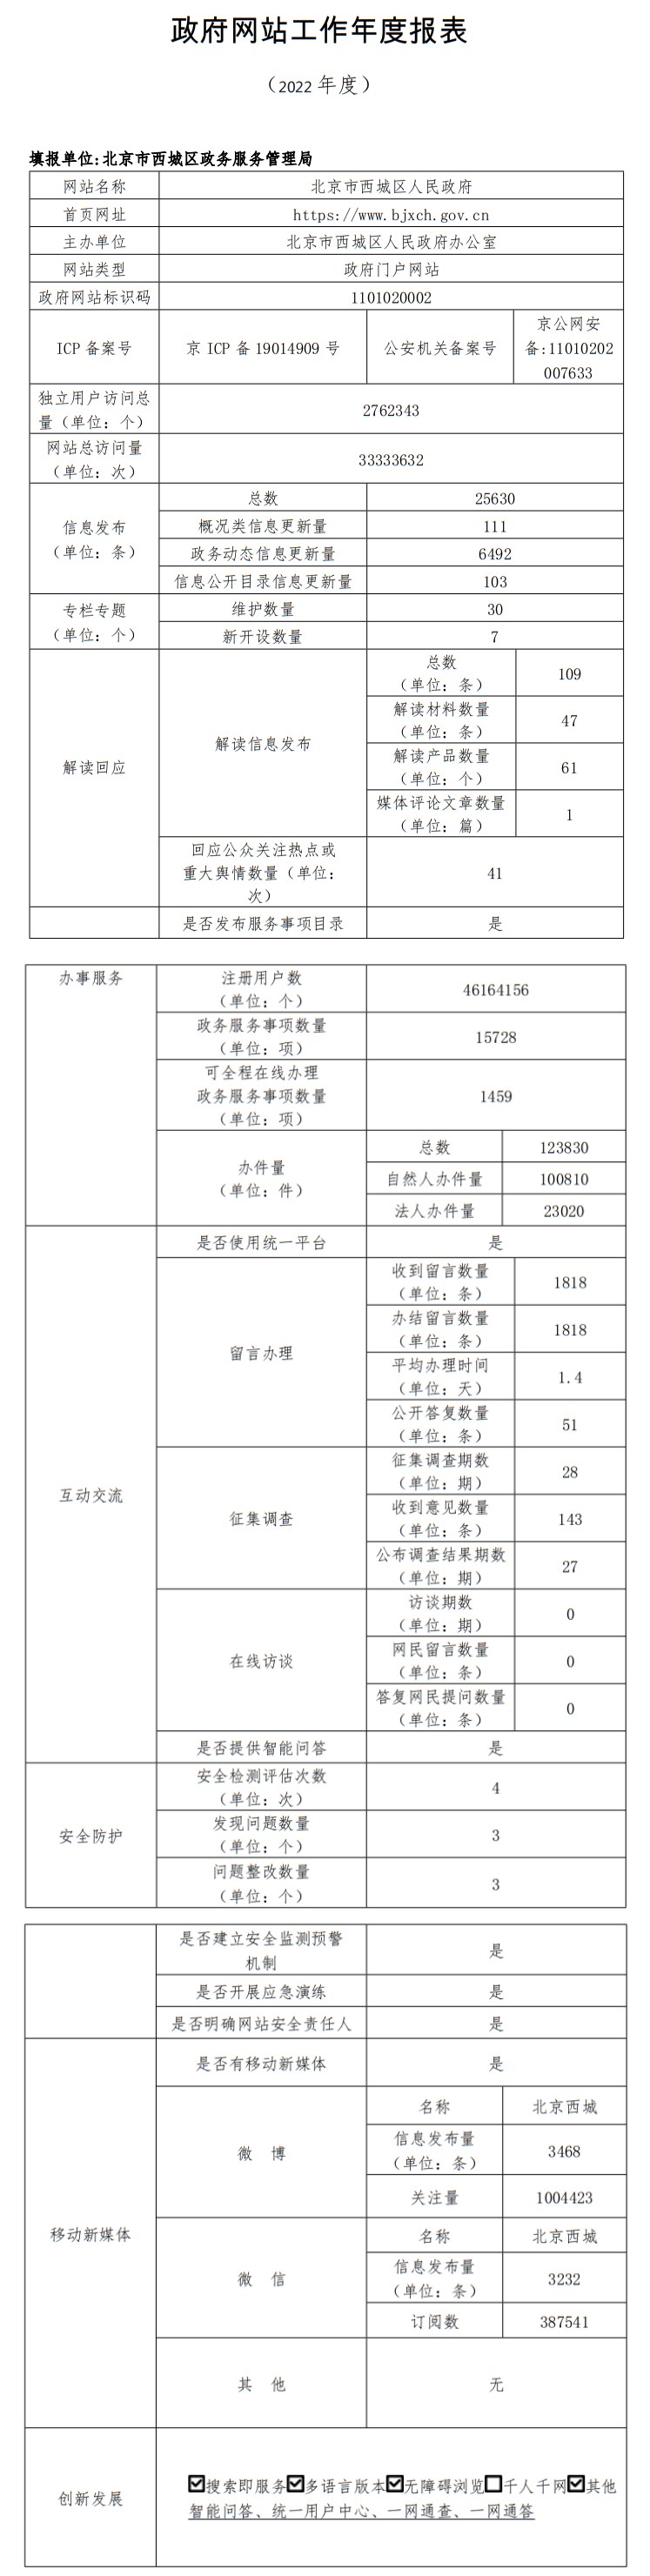 北京市西城區人民政府2022年政府網站年度工作報表